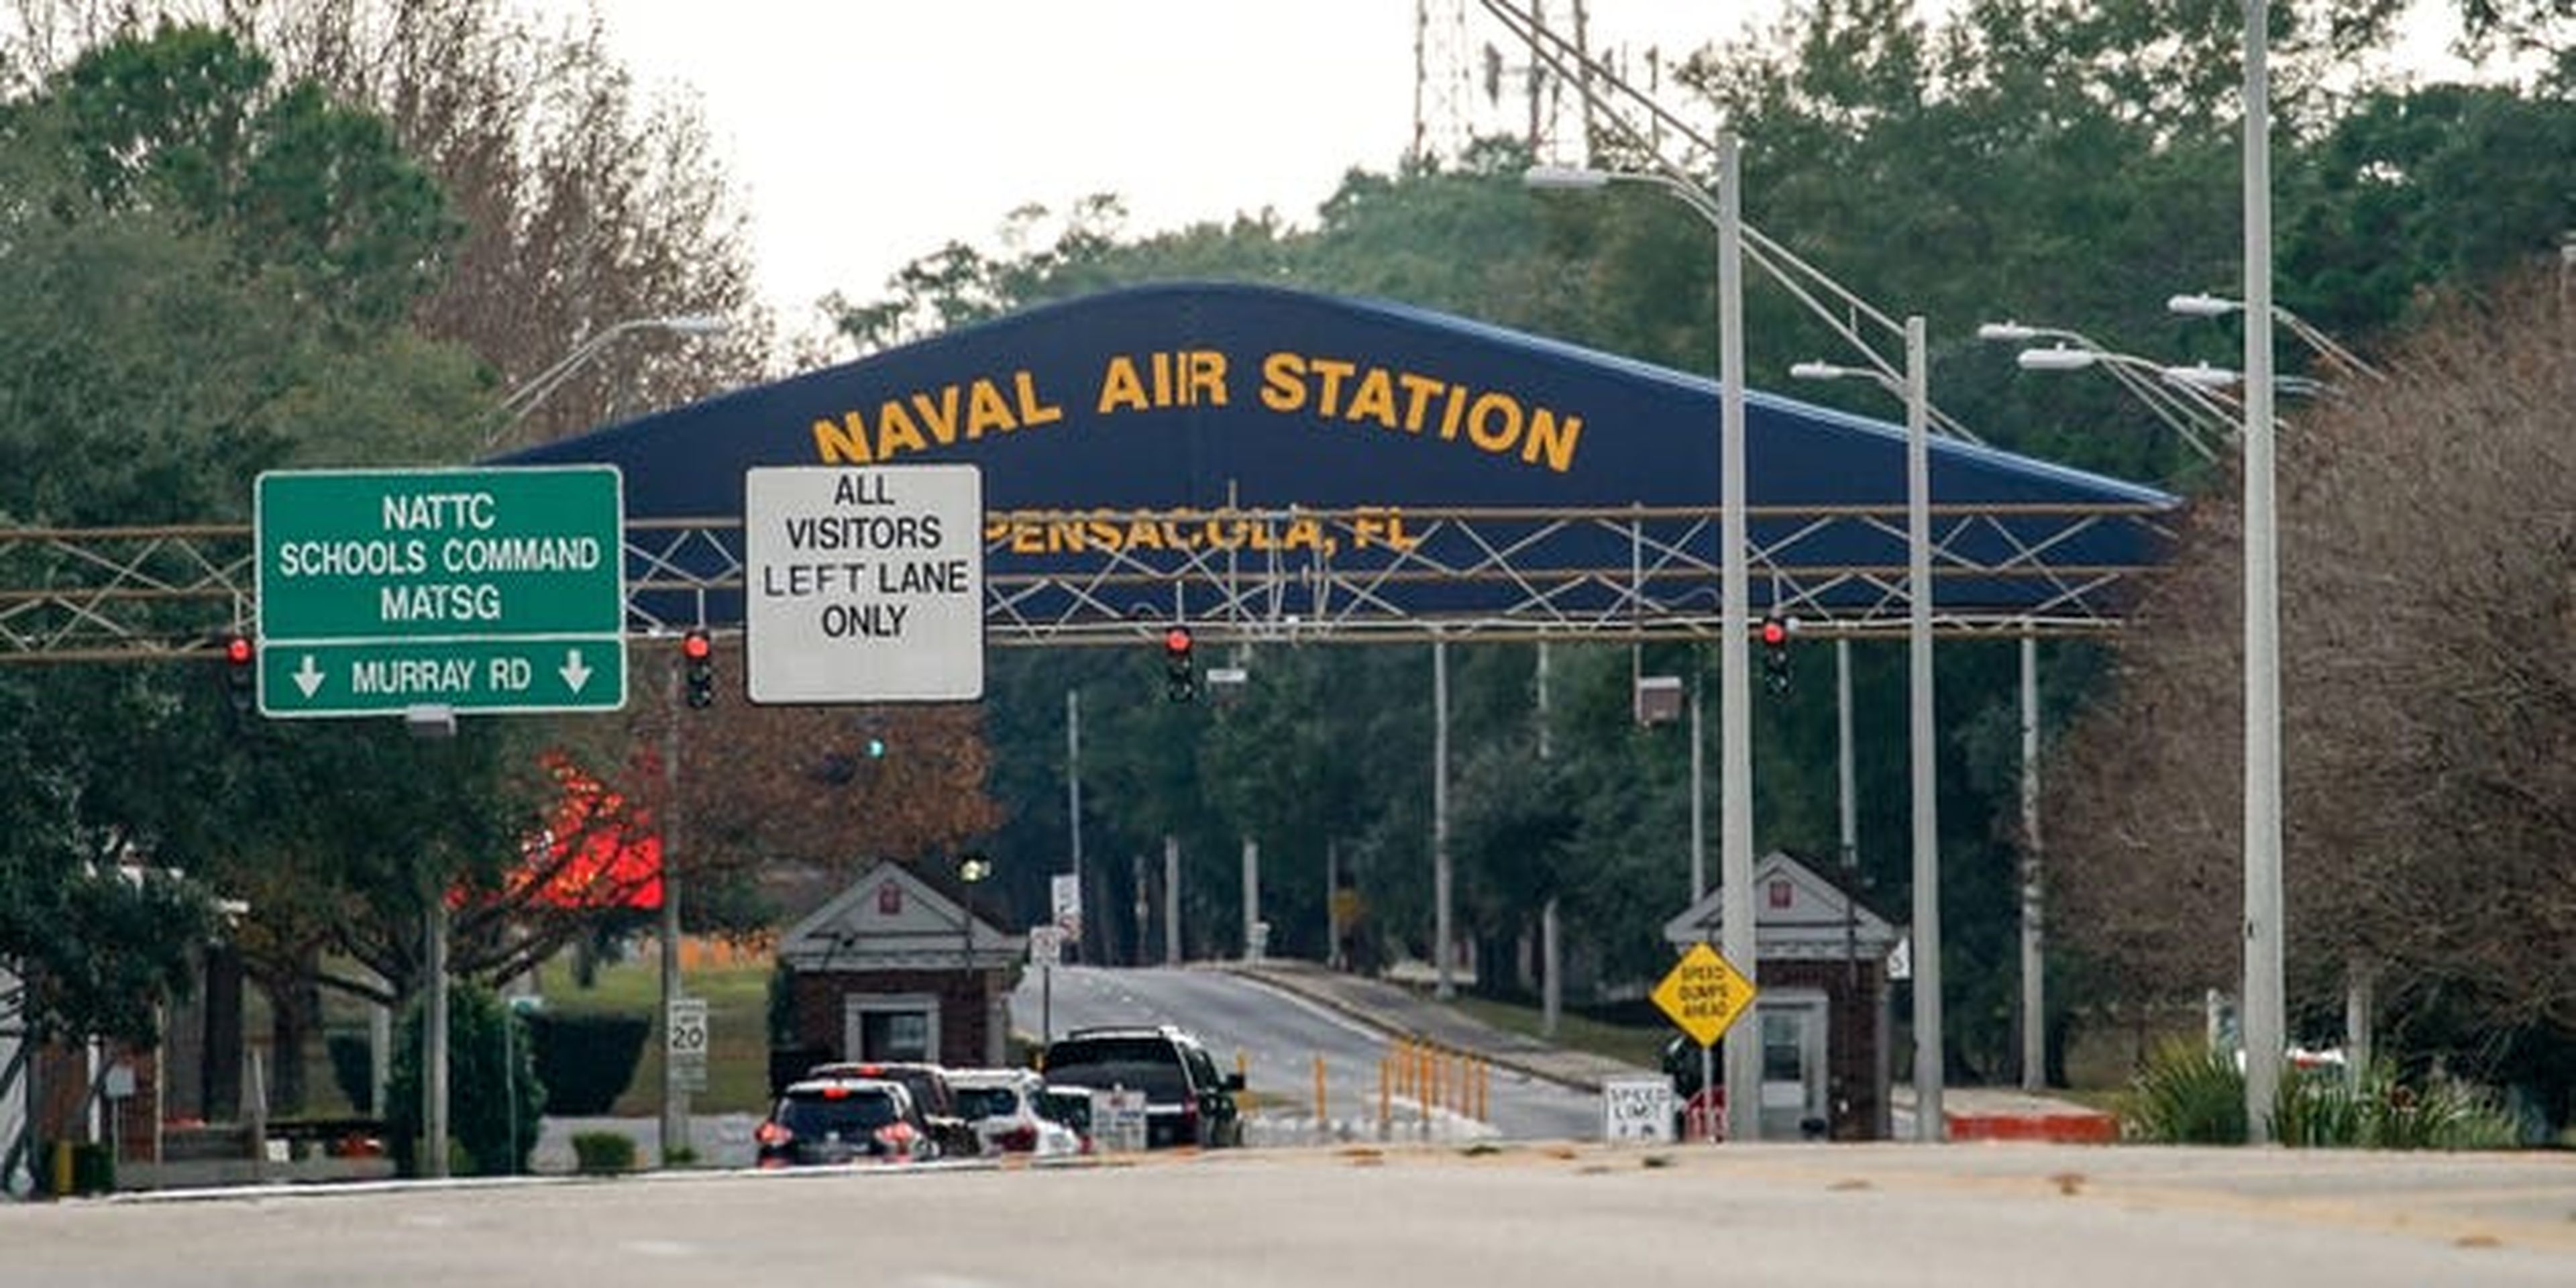 Una vista general de la Estación Aérea Naval de Pensacola después del tiroteo del 6 de diciembre de 2019 en Pensacola, Florida, EEUU.